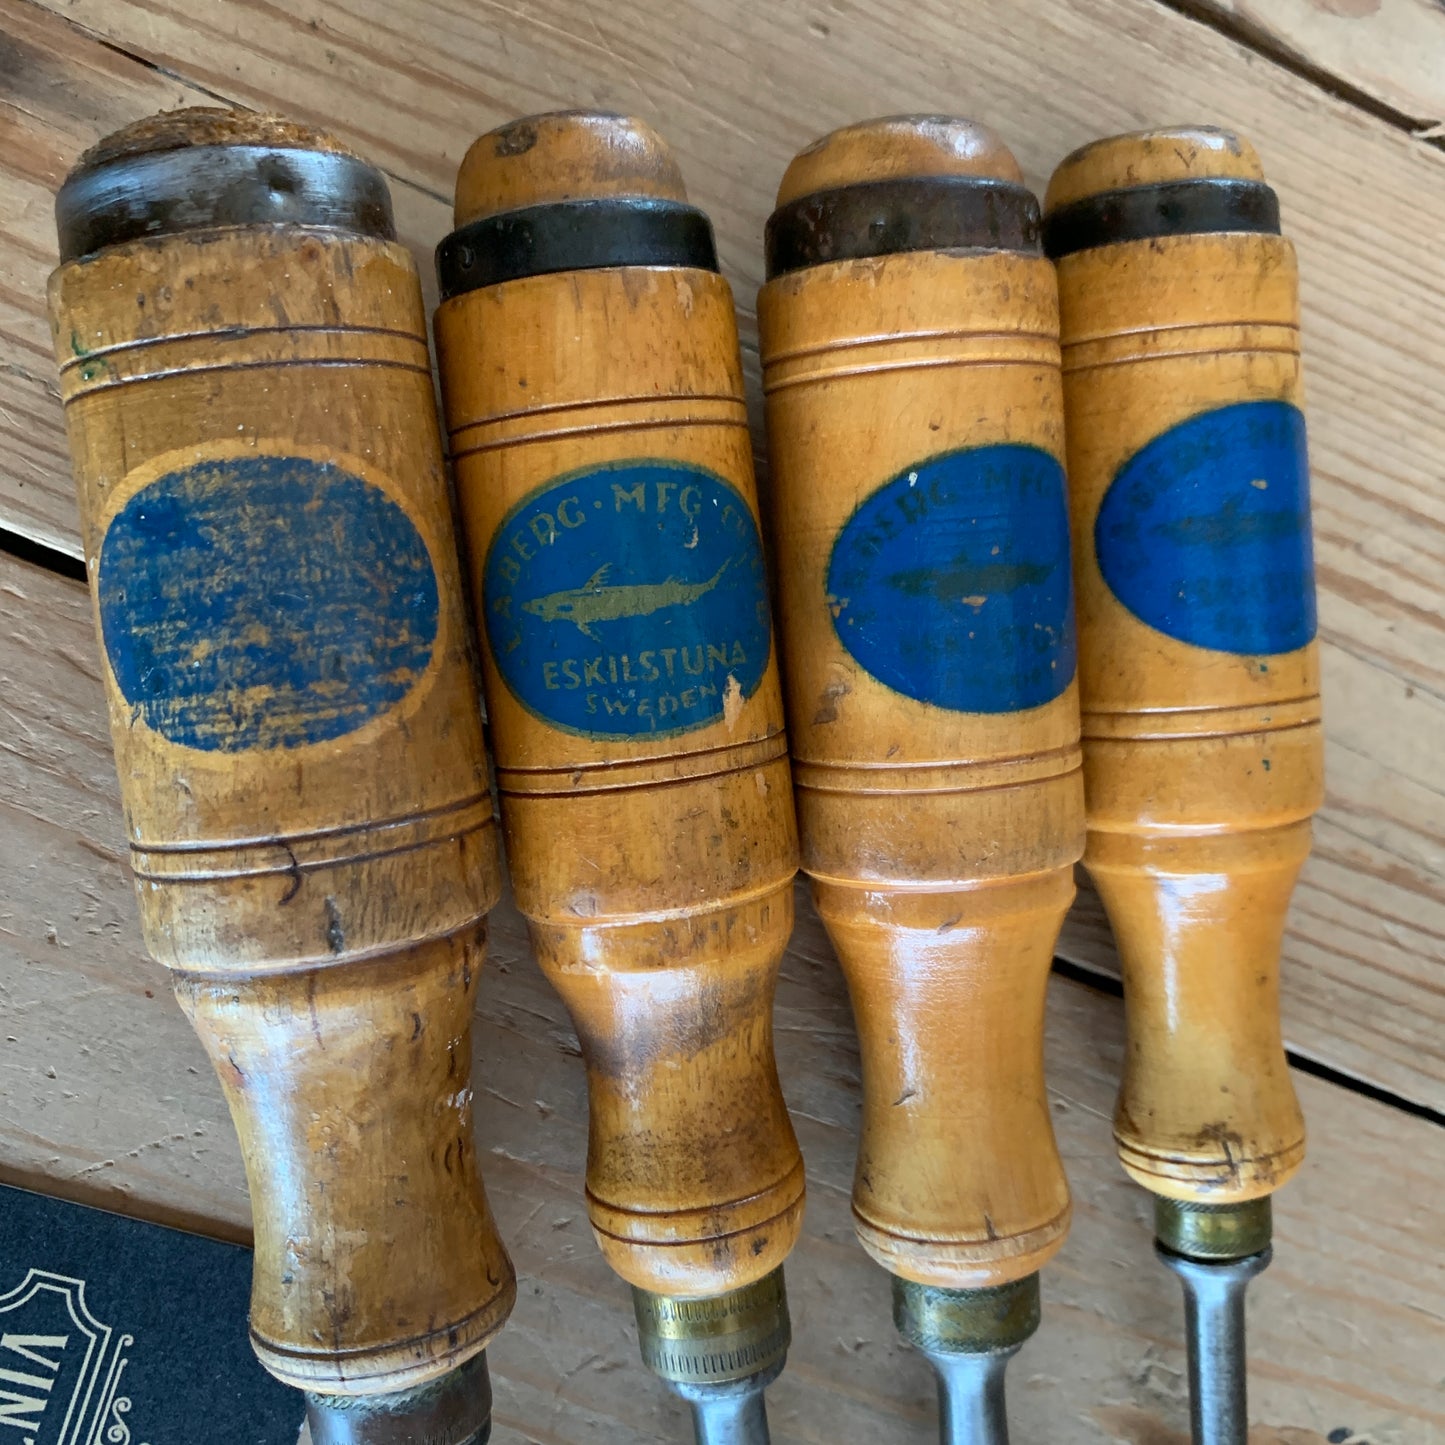 SOLD T10064 Vintage set of 4 E.A. BERG Sweden wooden handle BEVEL CHISELS